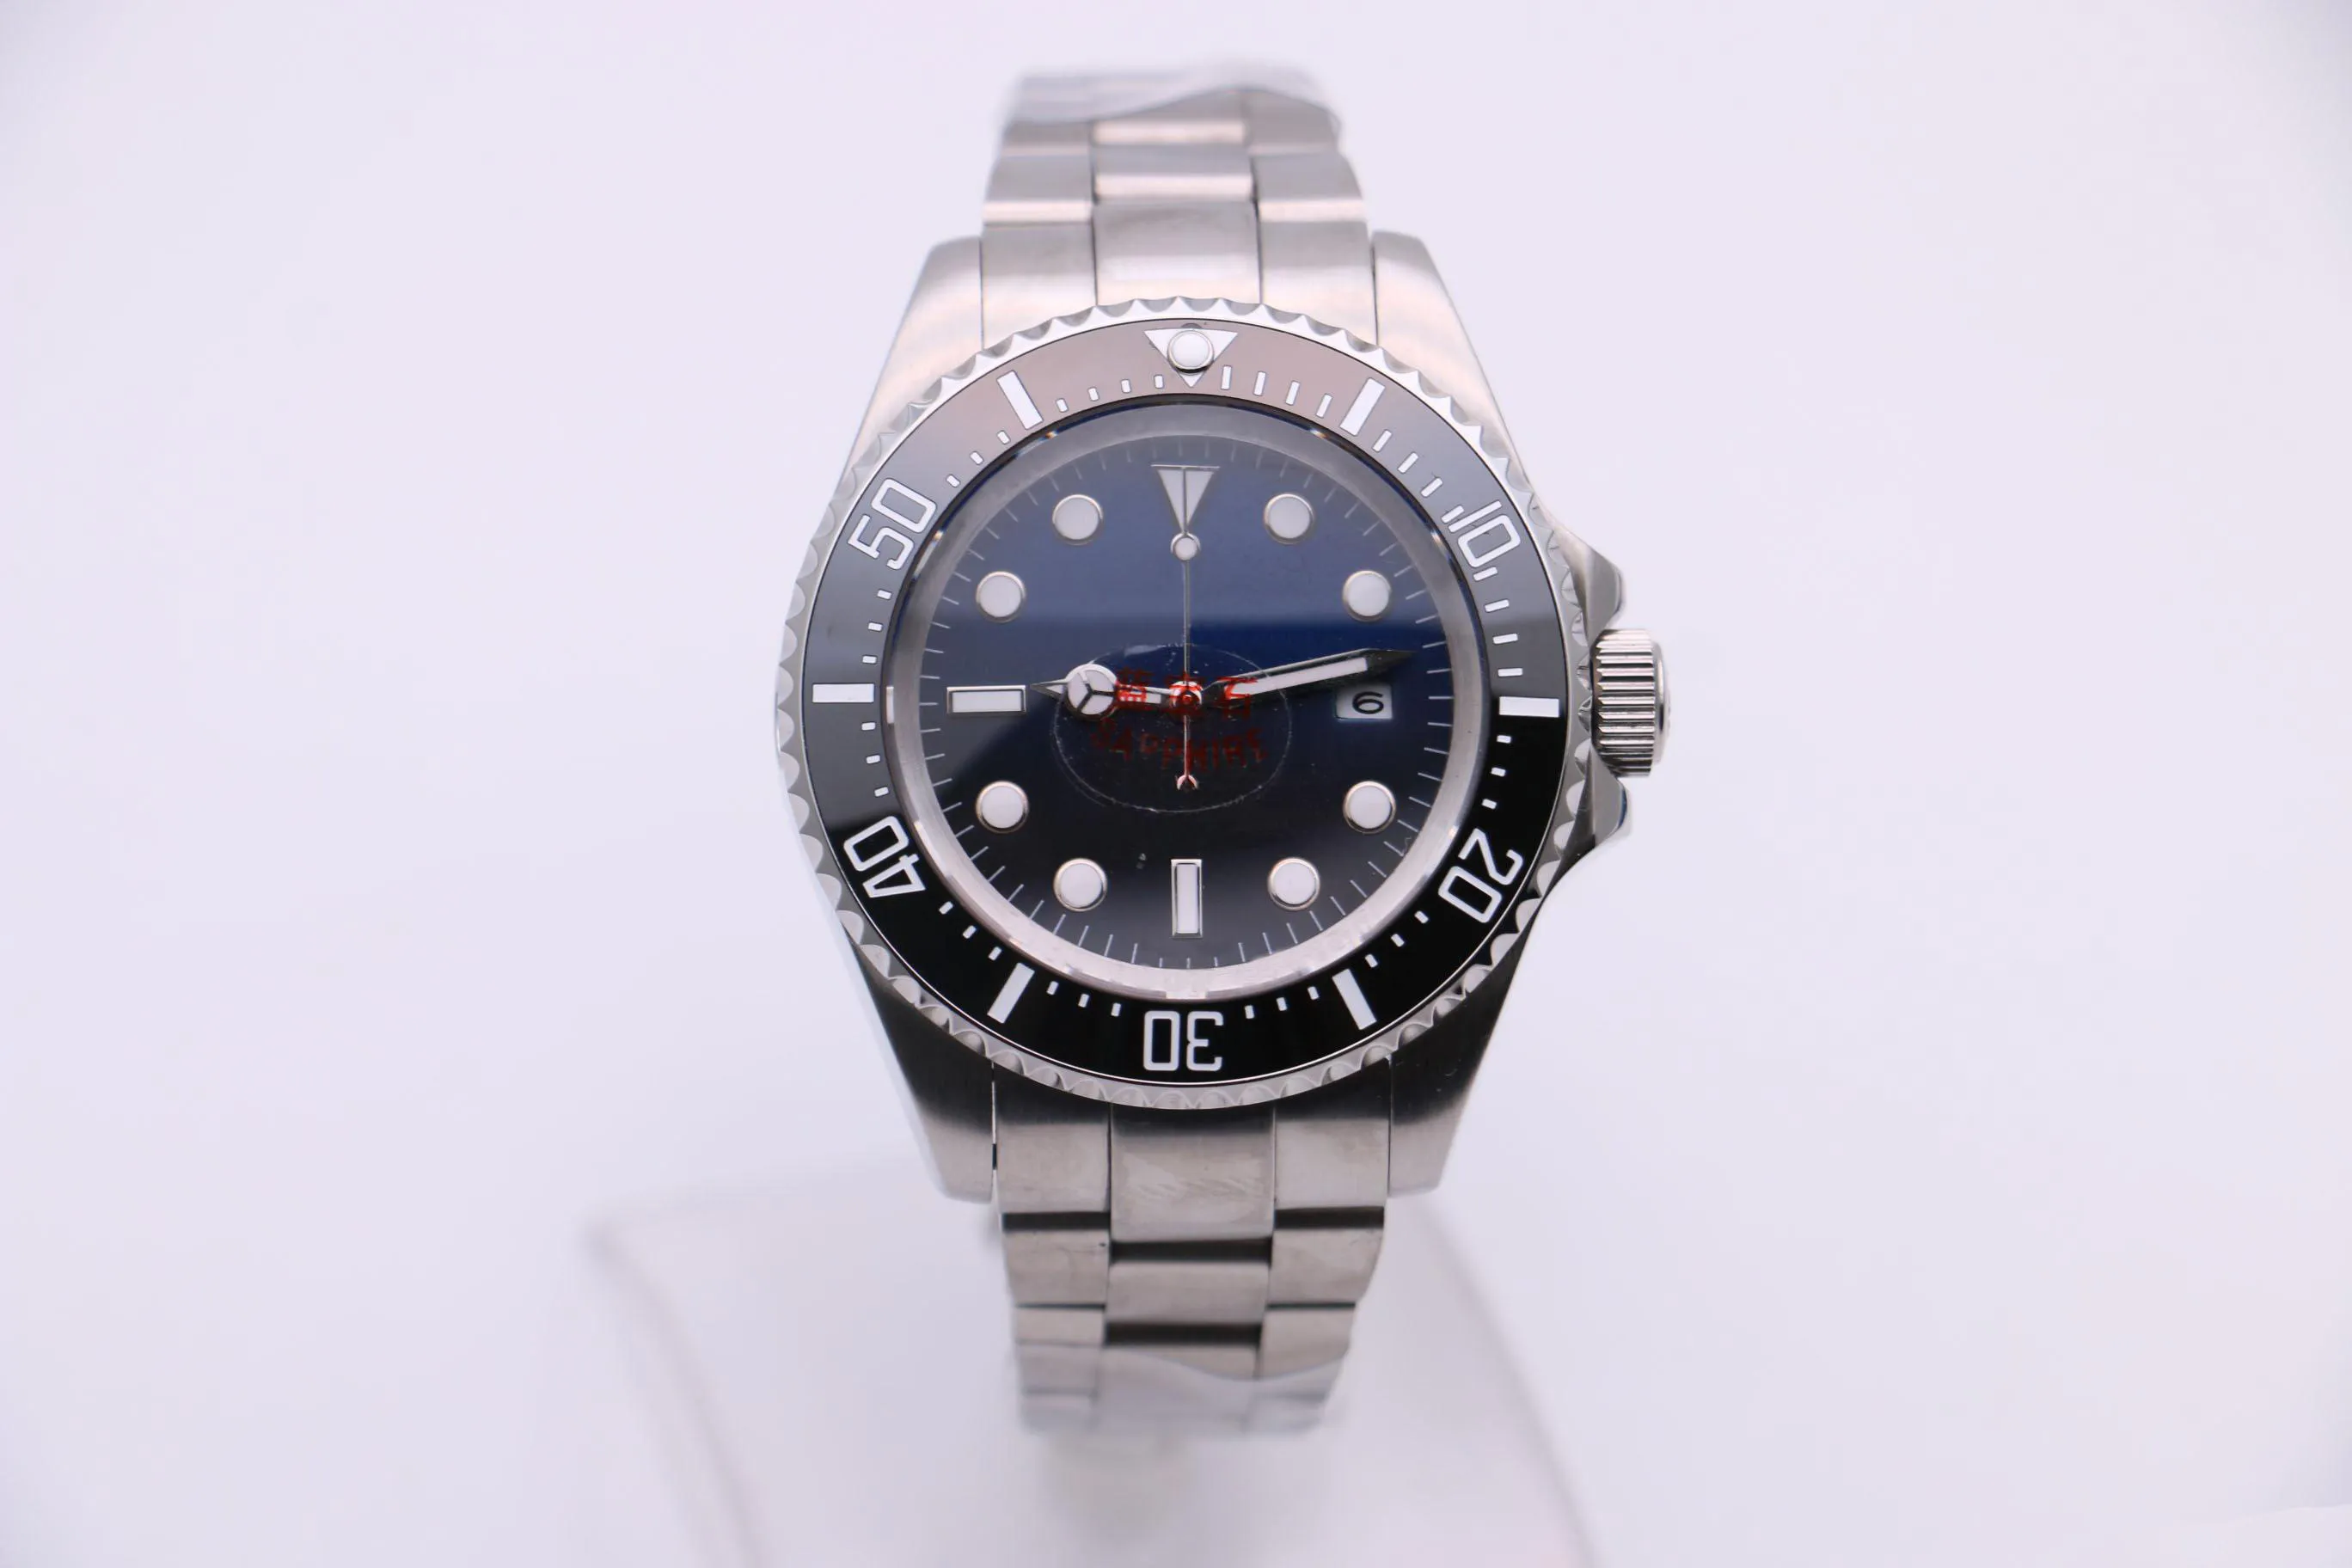 Watch index inoxydable116660 bon dialtique bleu noir céramique en céramique M126660 mécanique automatique maître masculin montres à base de bases